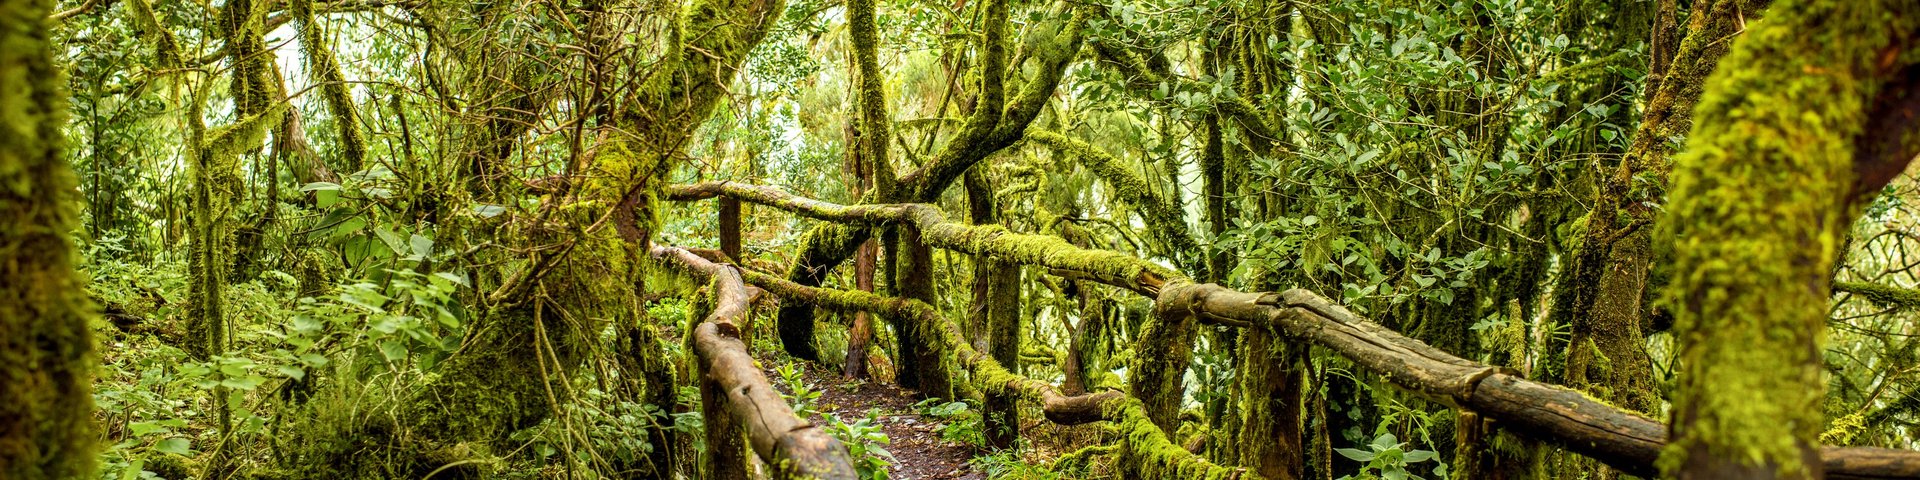 Nationalpark Irazu  in Costa Rica